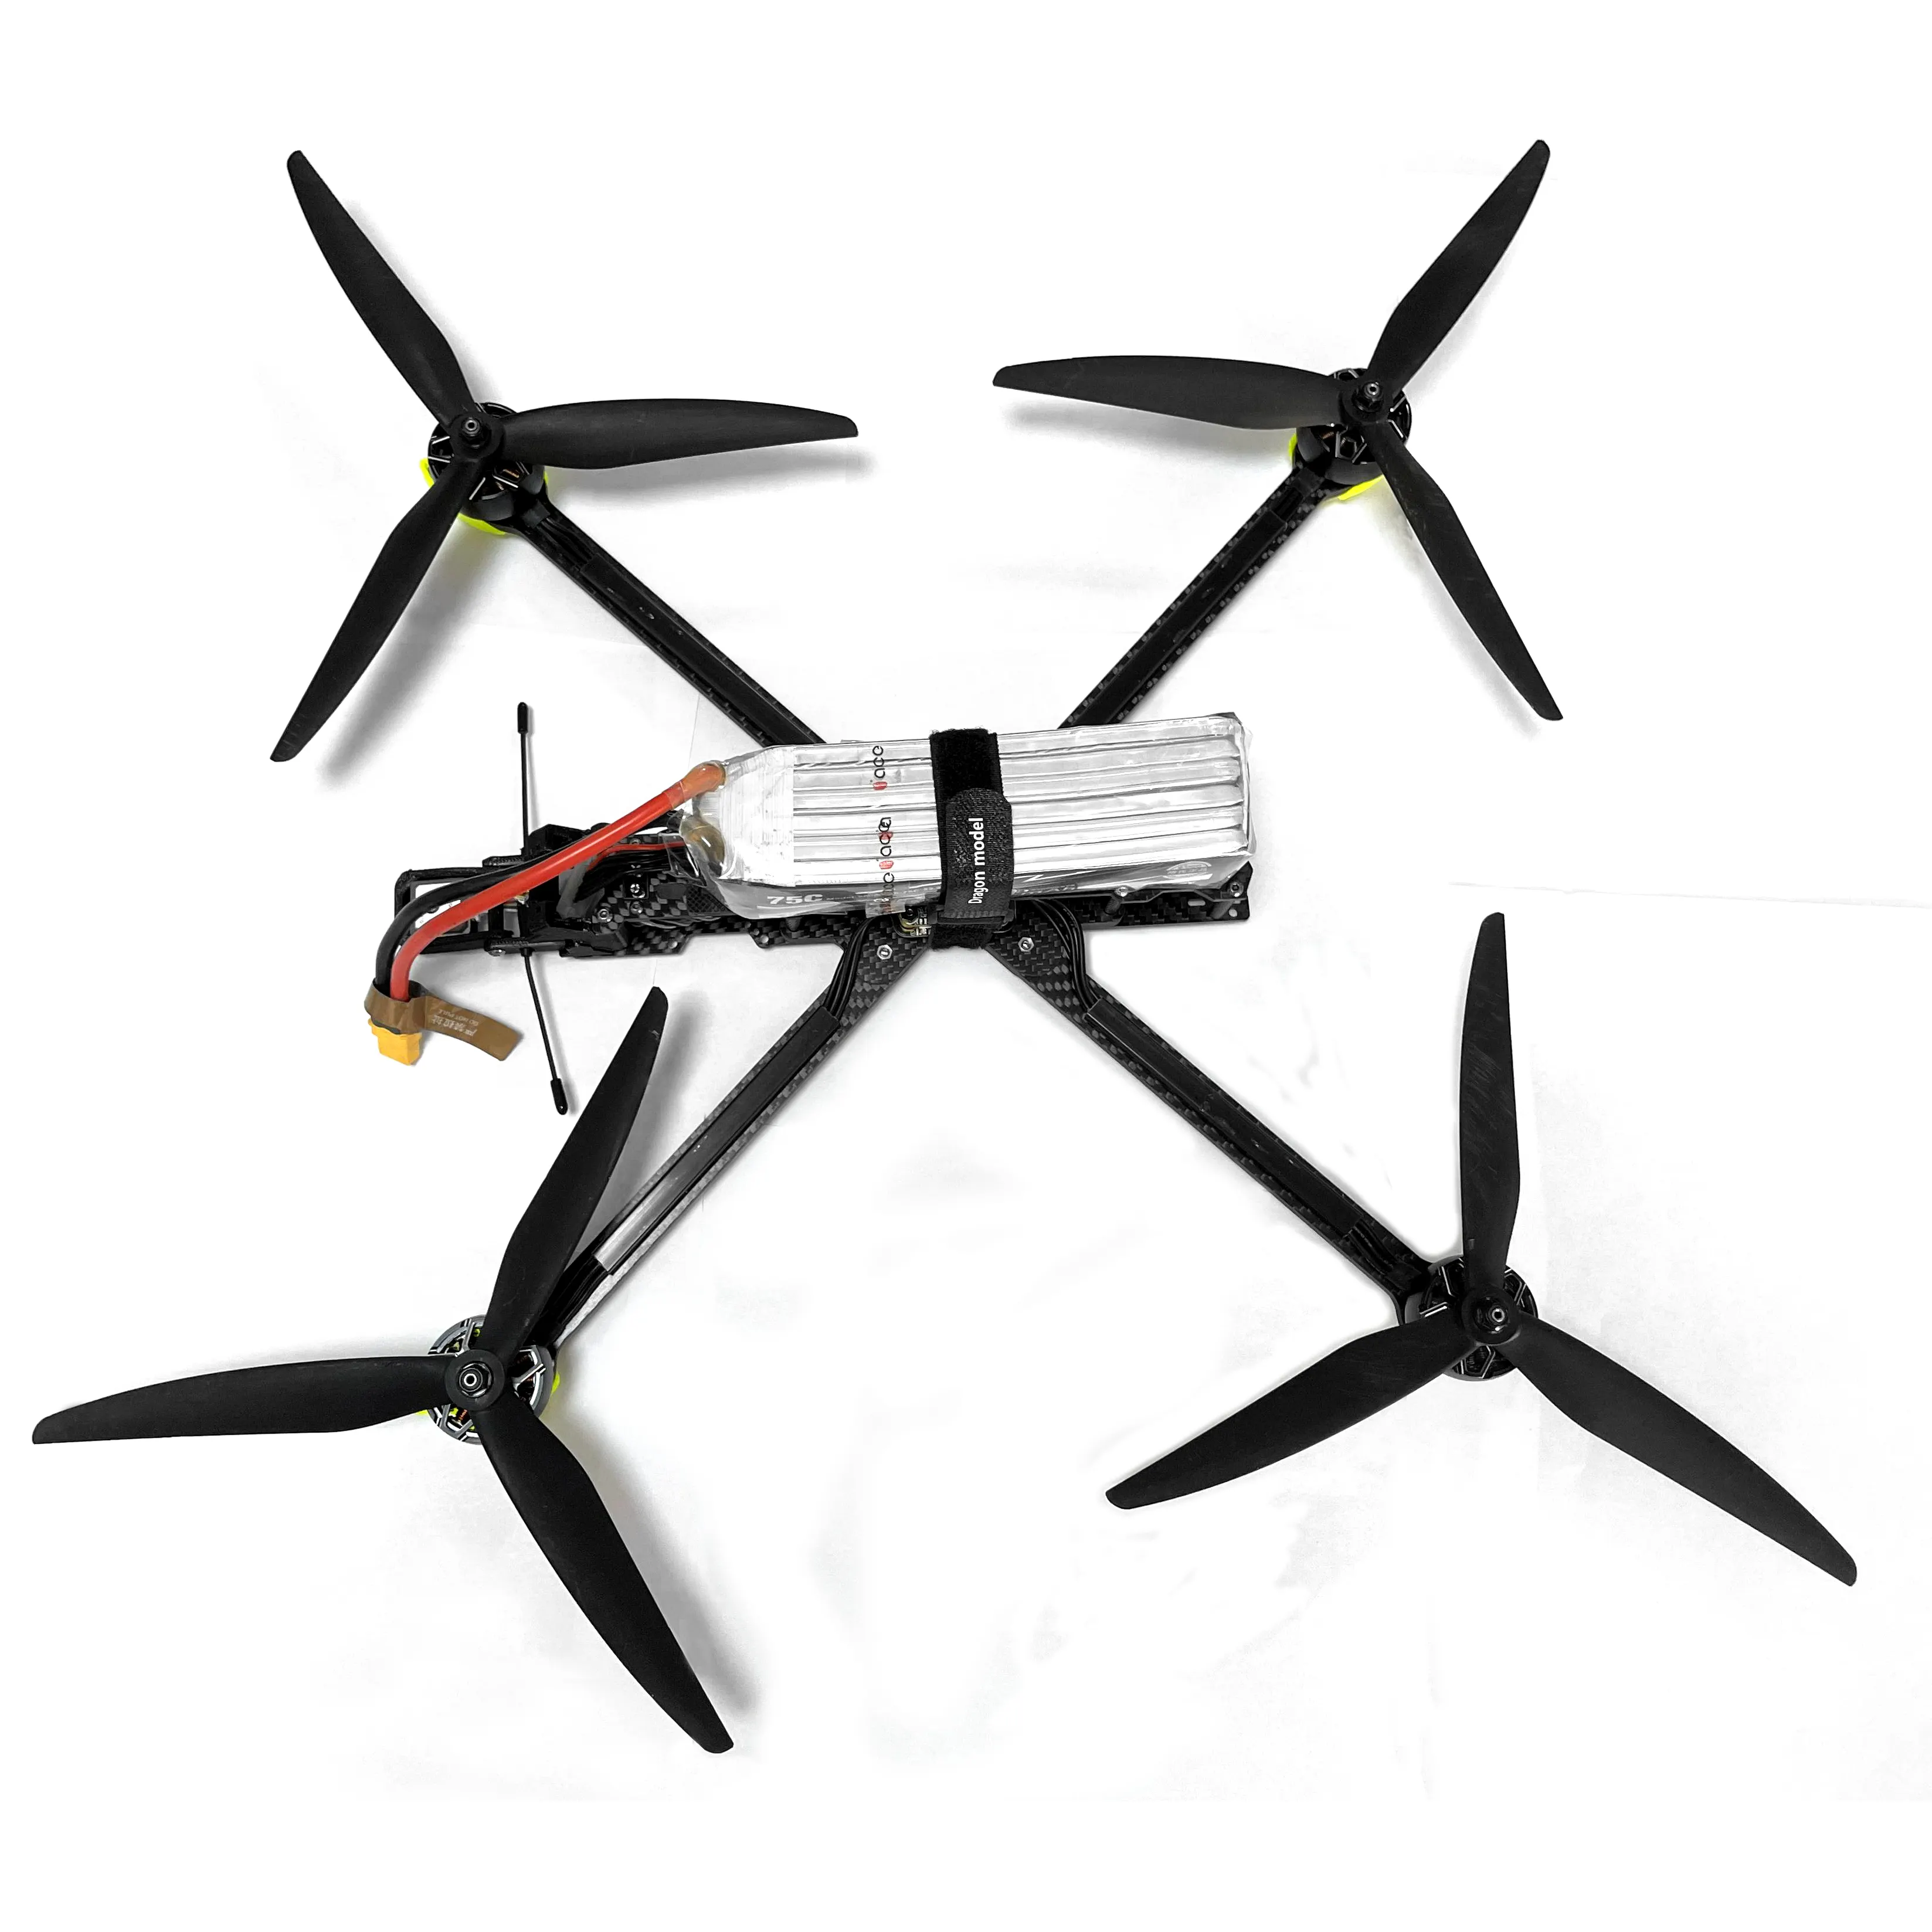 Gece görüş kamera ile TYI 10 inç RC FPV drone playload 4kg profesyonel drone uzun uçan zaman